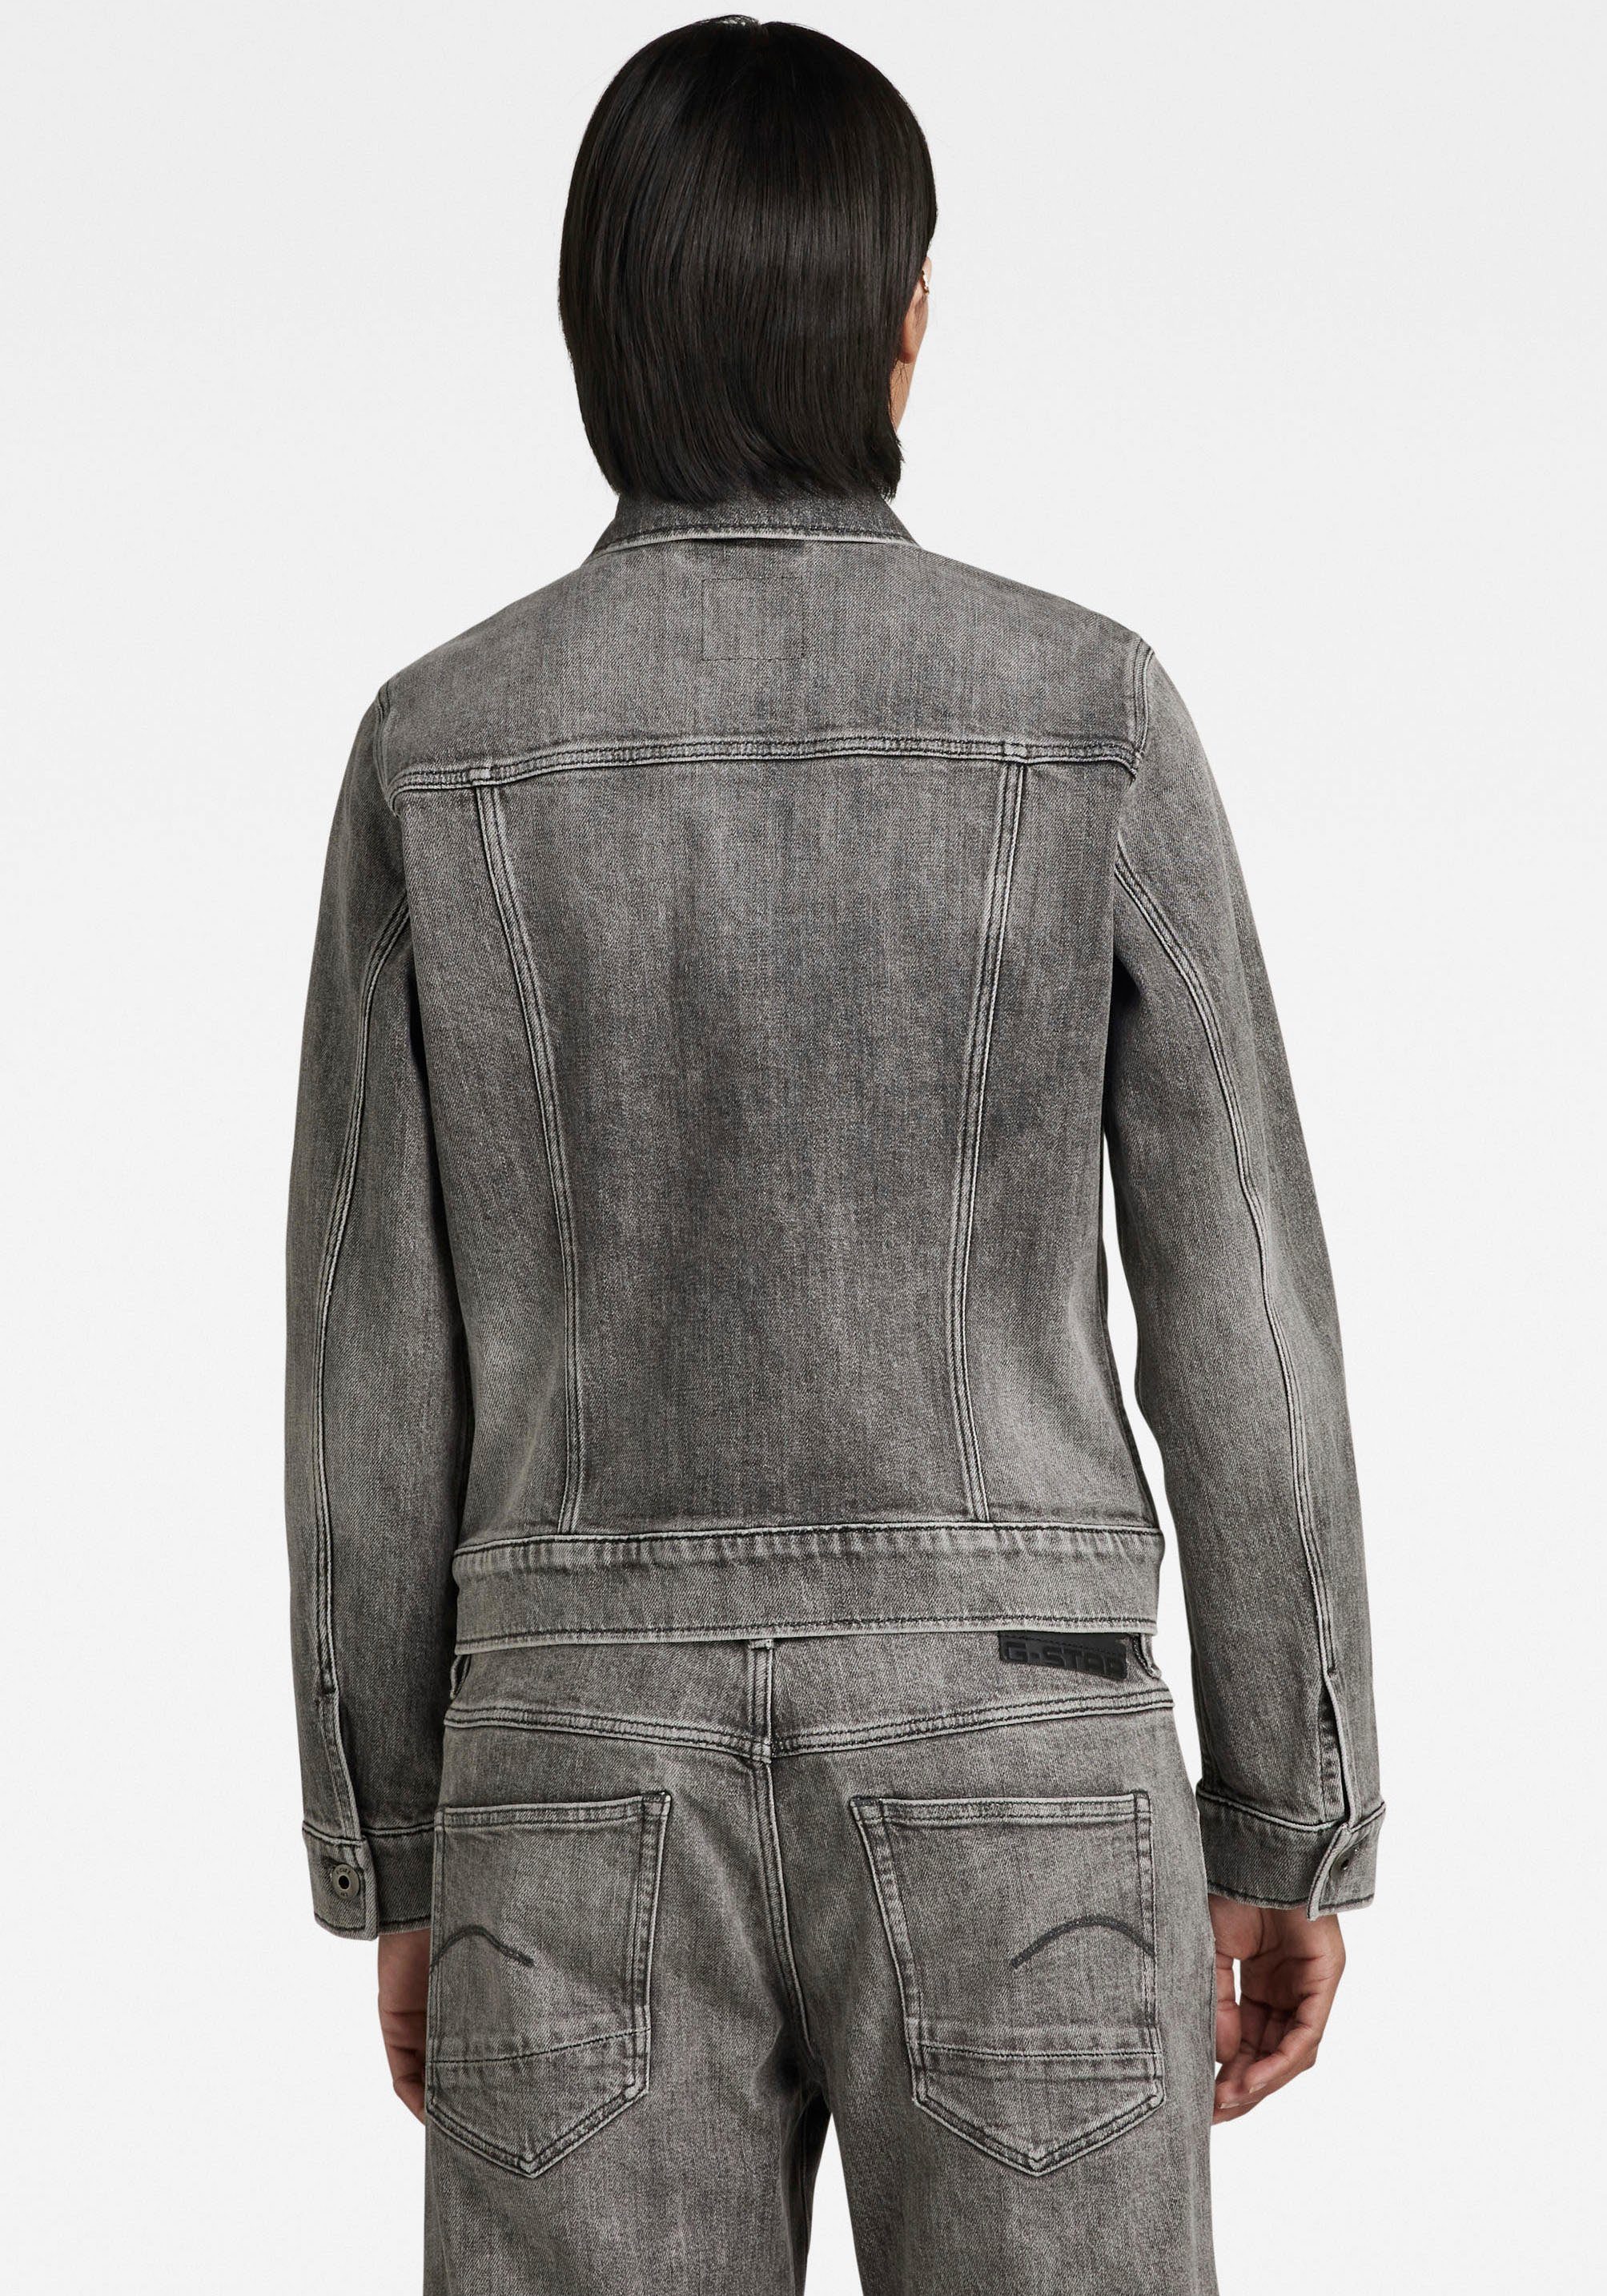 mit G-Star Jeansjacke jacket Pattentaschen RAW faded 3D aufgesetzten Arc Ösenknöpfen mit carbon